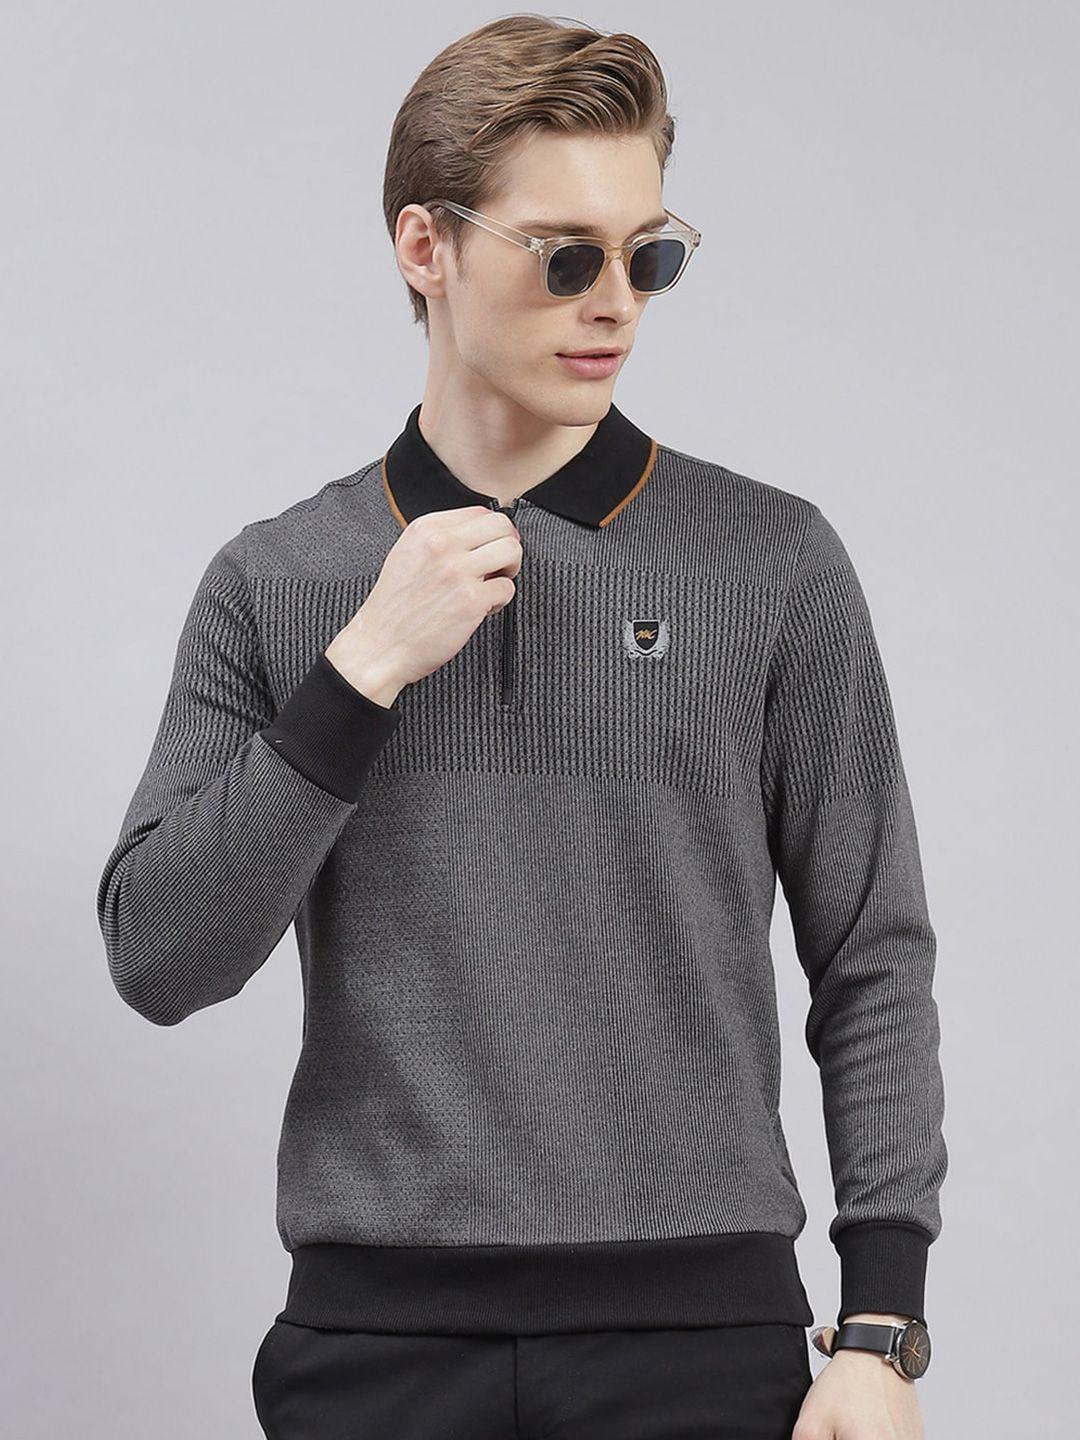 monte carlo striped self design polo collar pullover sweatshirt